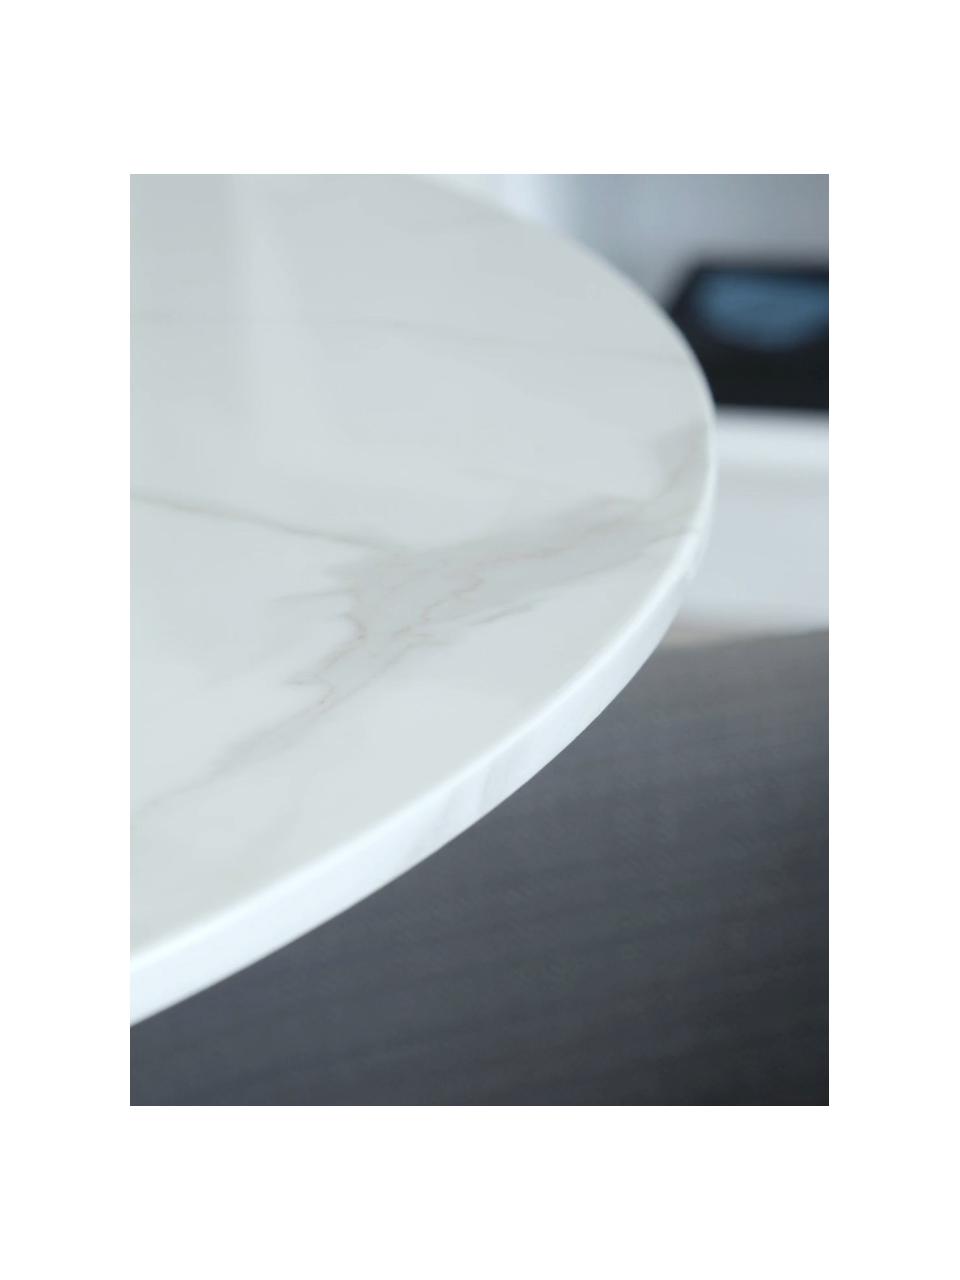 Tavolo rotondo effetto marmo Karla, Ø 90 cm, Bianco marmorizzato, nero, Ø 90 x Alt. 75 cm